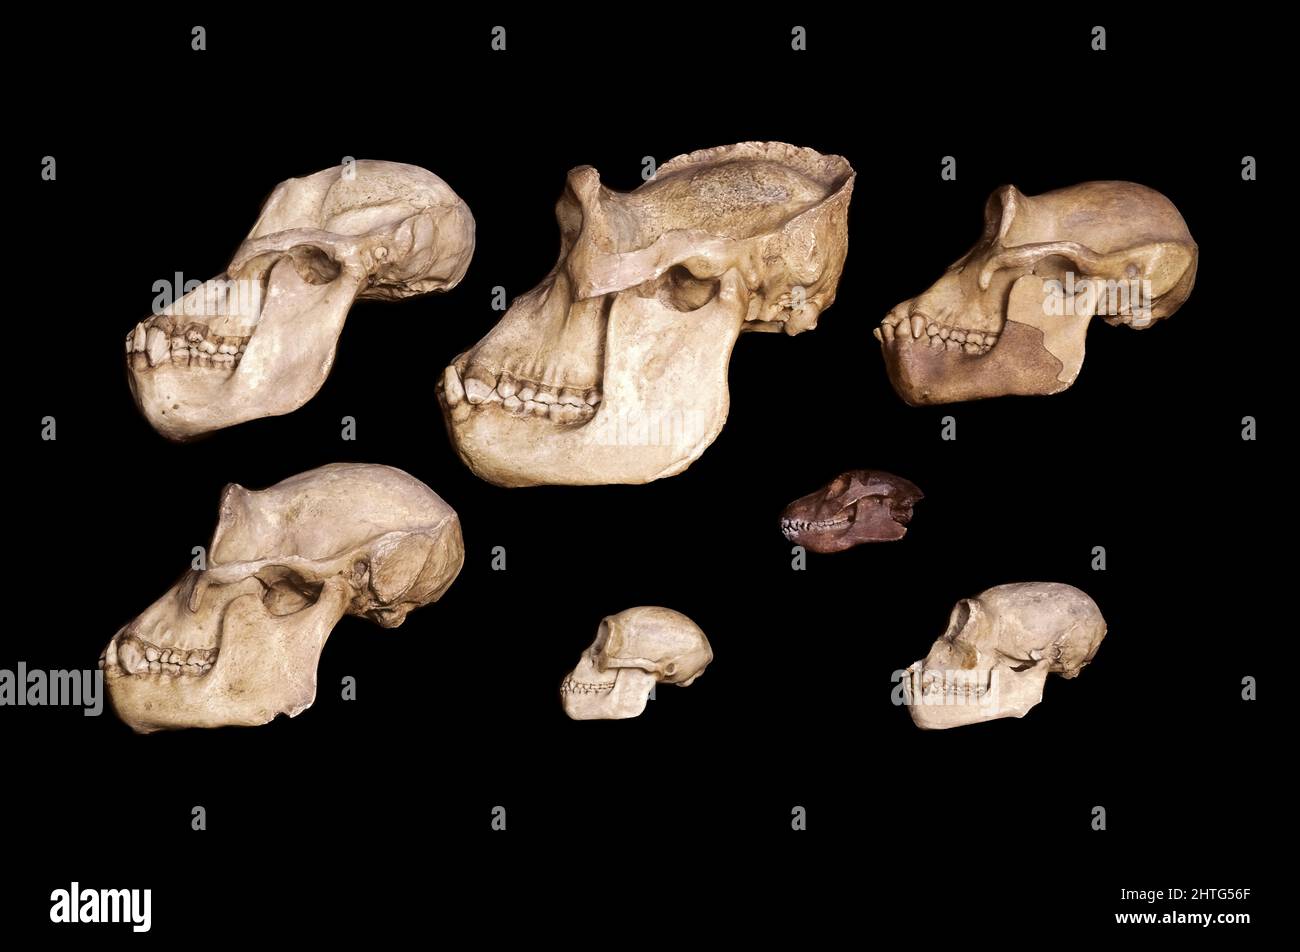 Cráneos de los Apes Antropoides Foto de stock